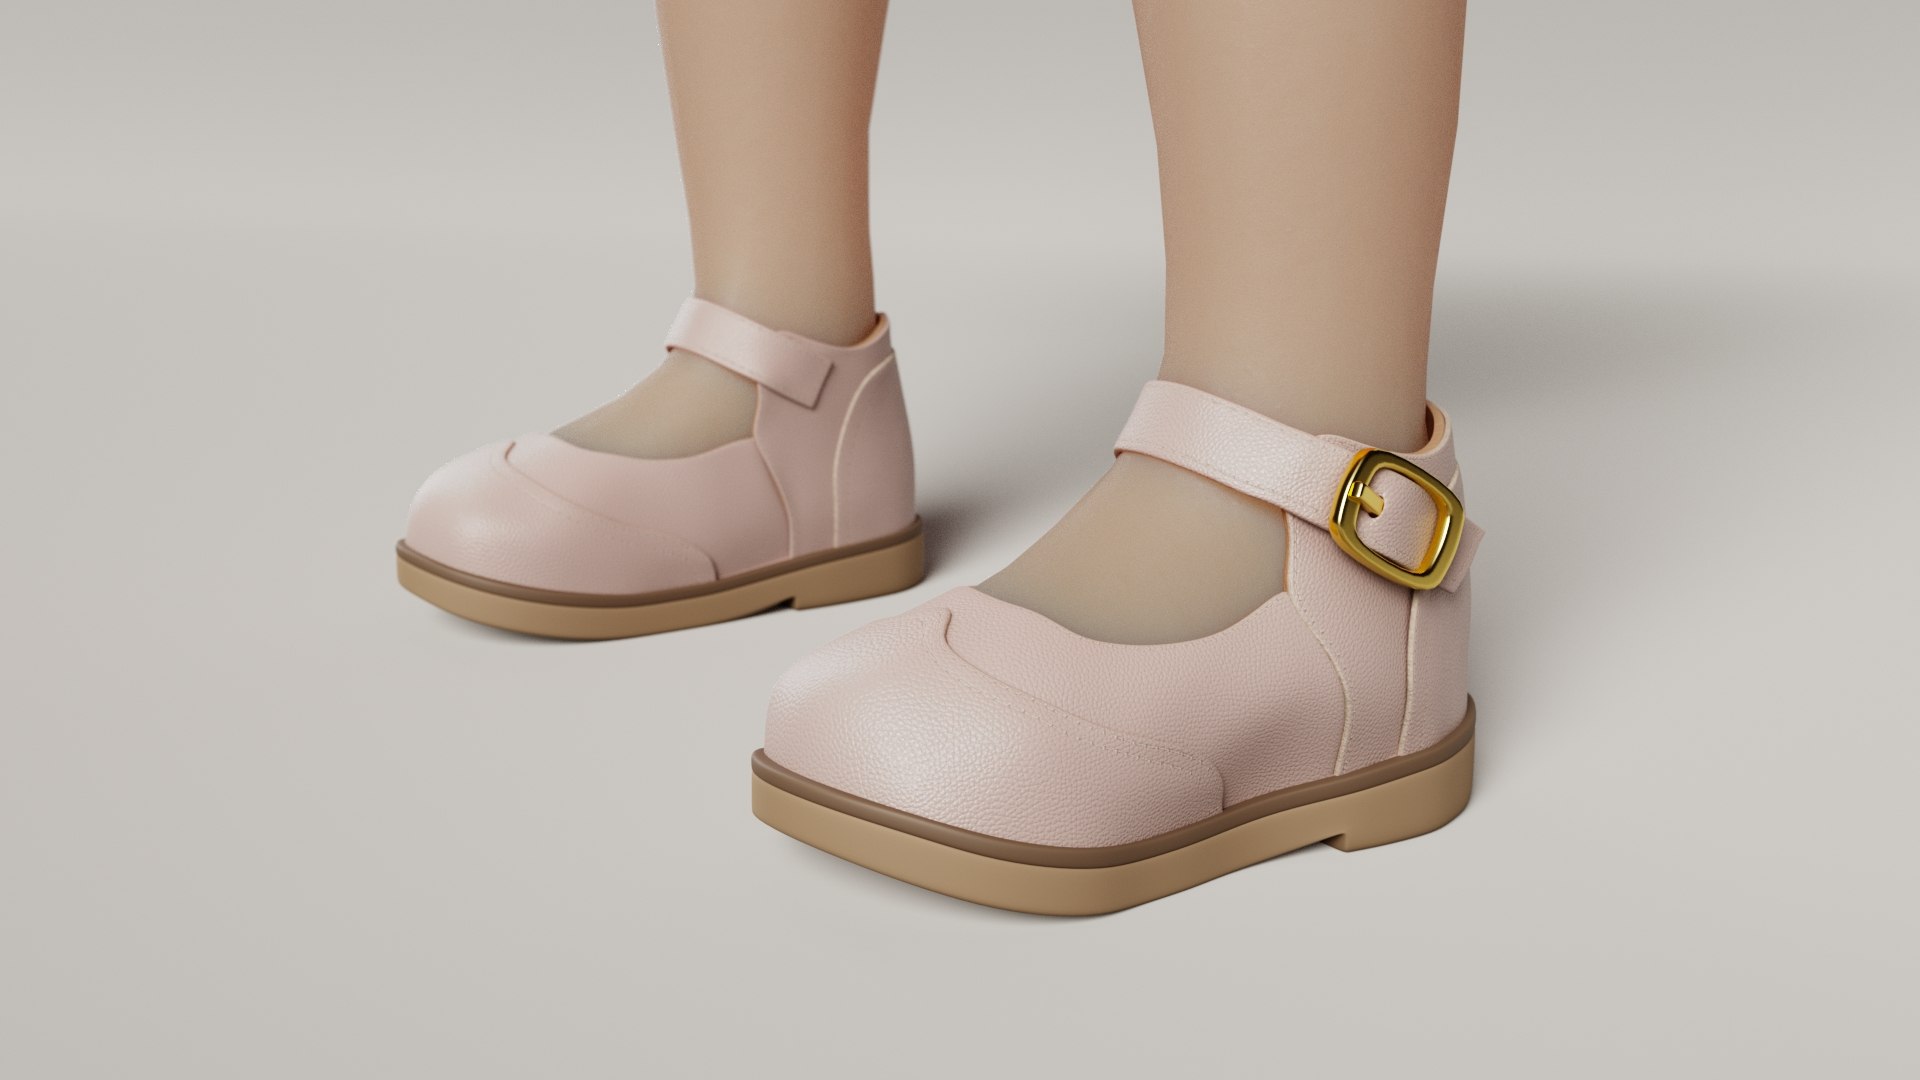 3D baby shoes - TurboSquid 1681451